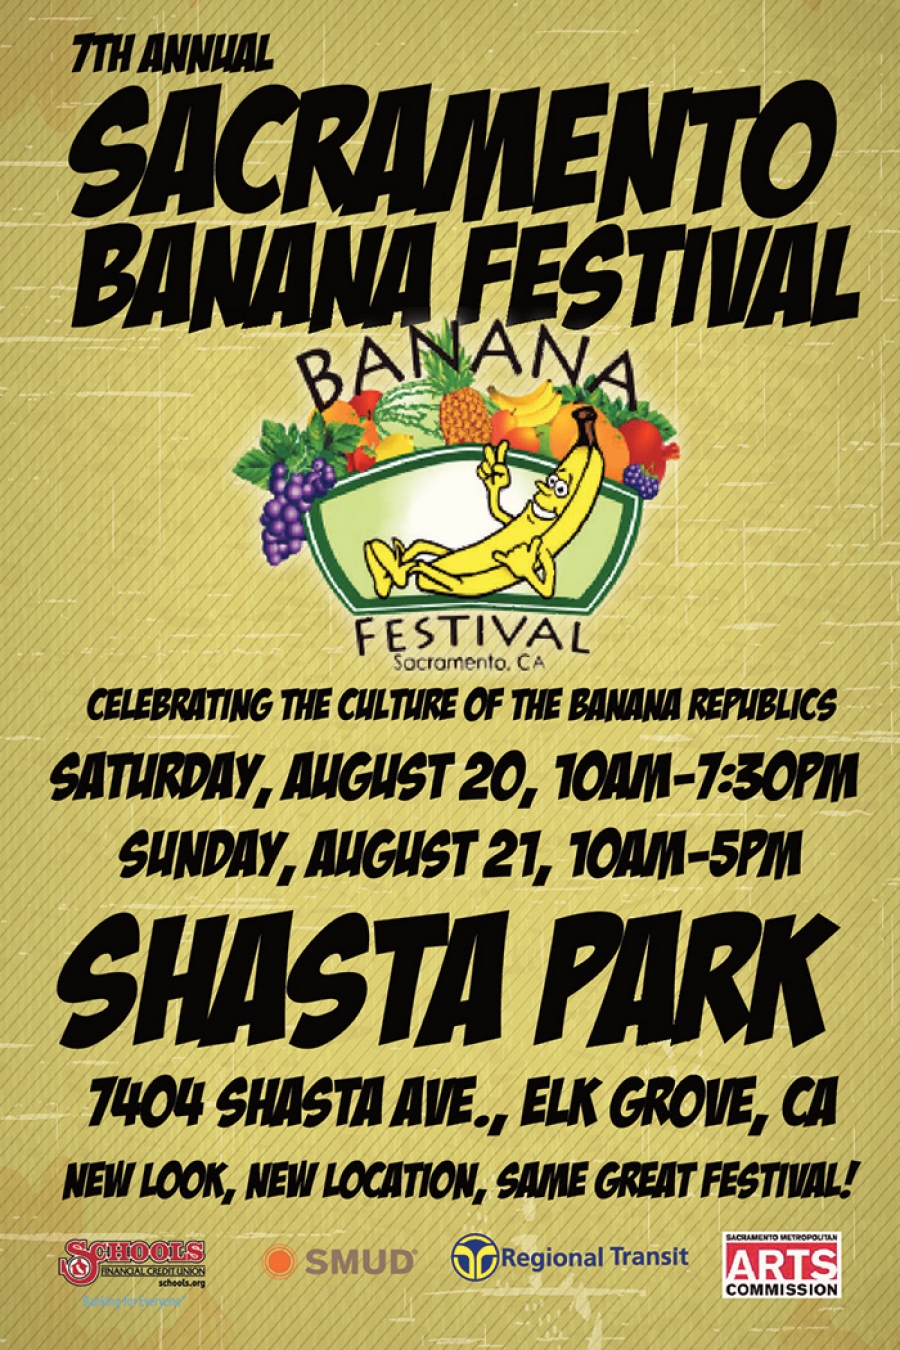 7th Annual Sacramento Banana Festival Sac Cultural Hub